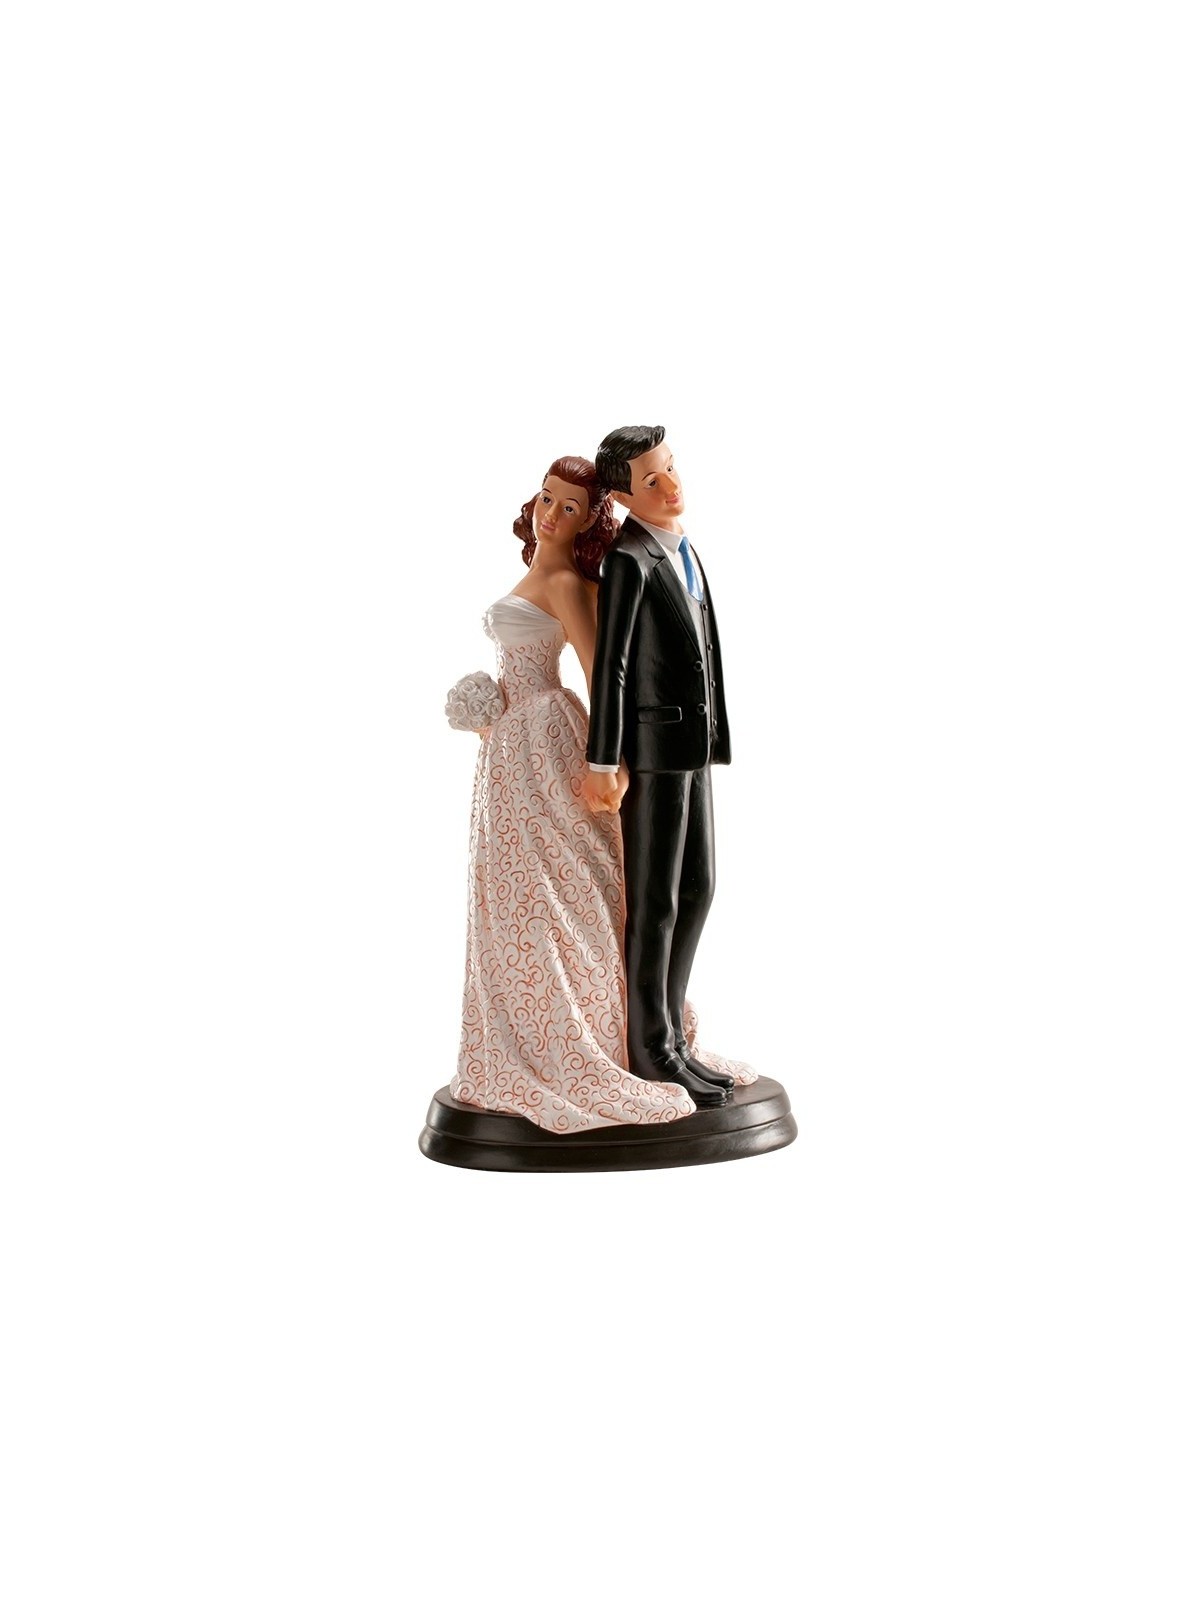 Svatební figurky - zády k sobě